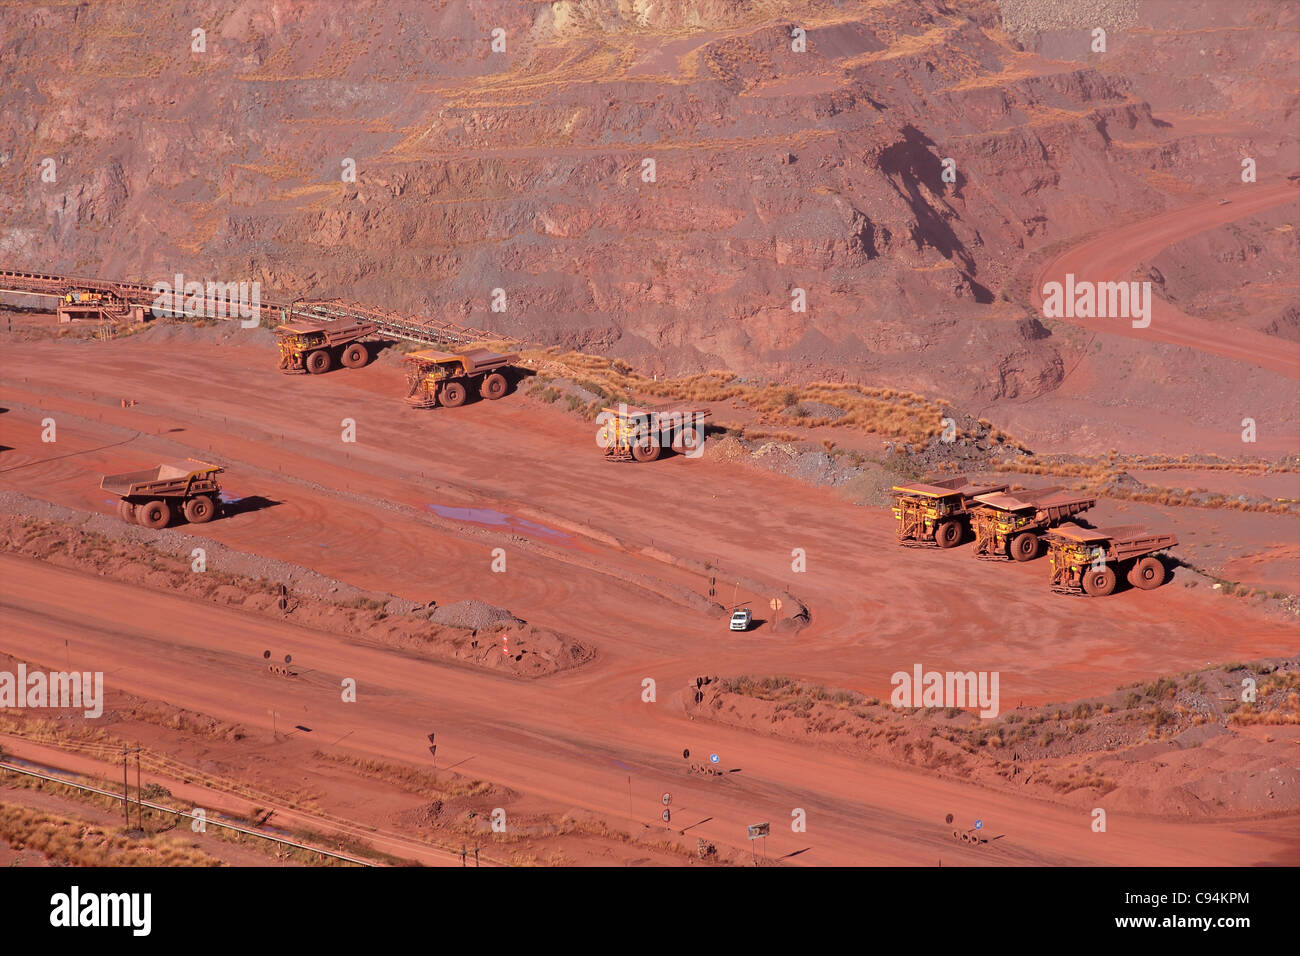 Grande, a cielo abierto de la mina de mineral de hierro con camiones Foto de stock